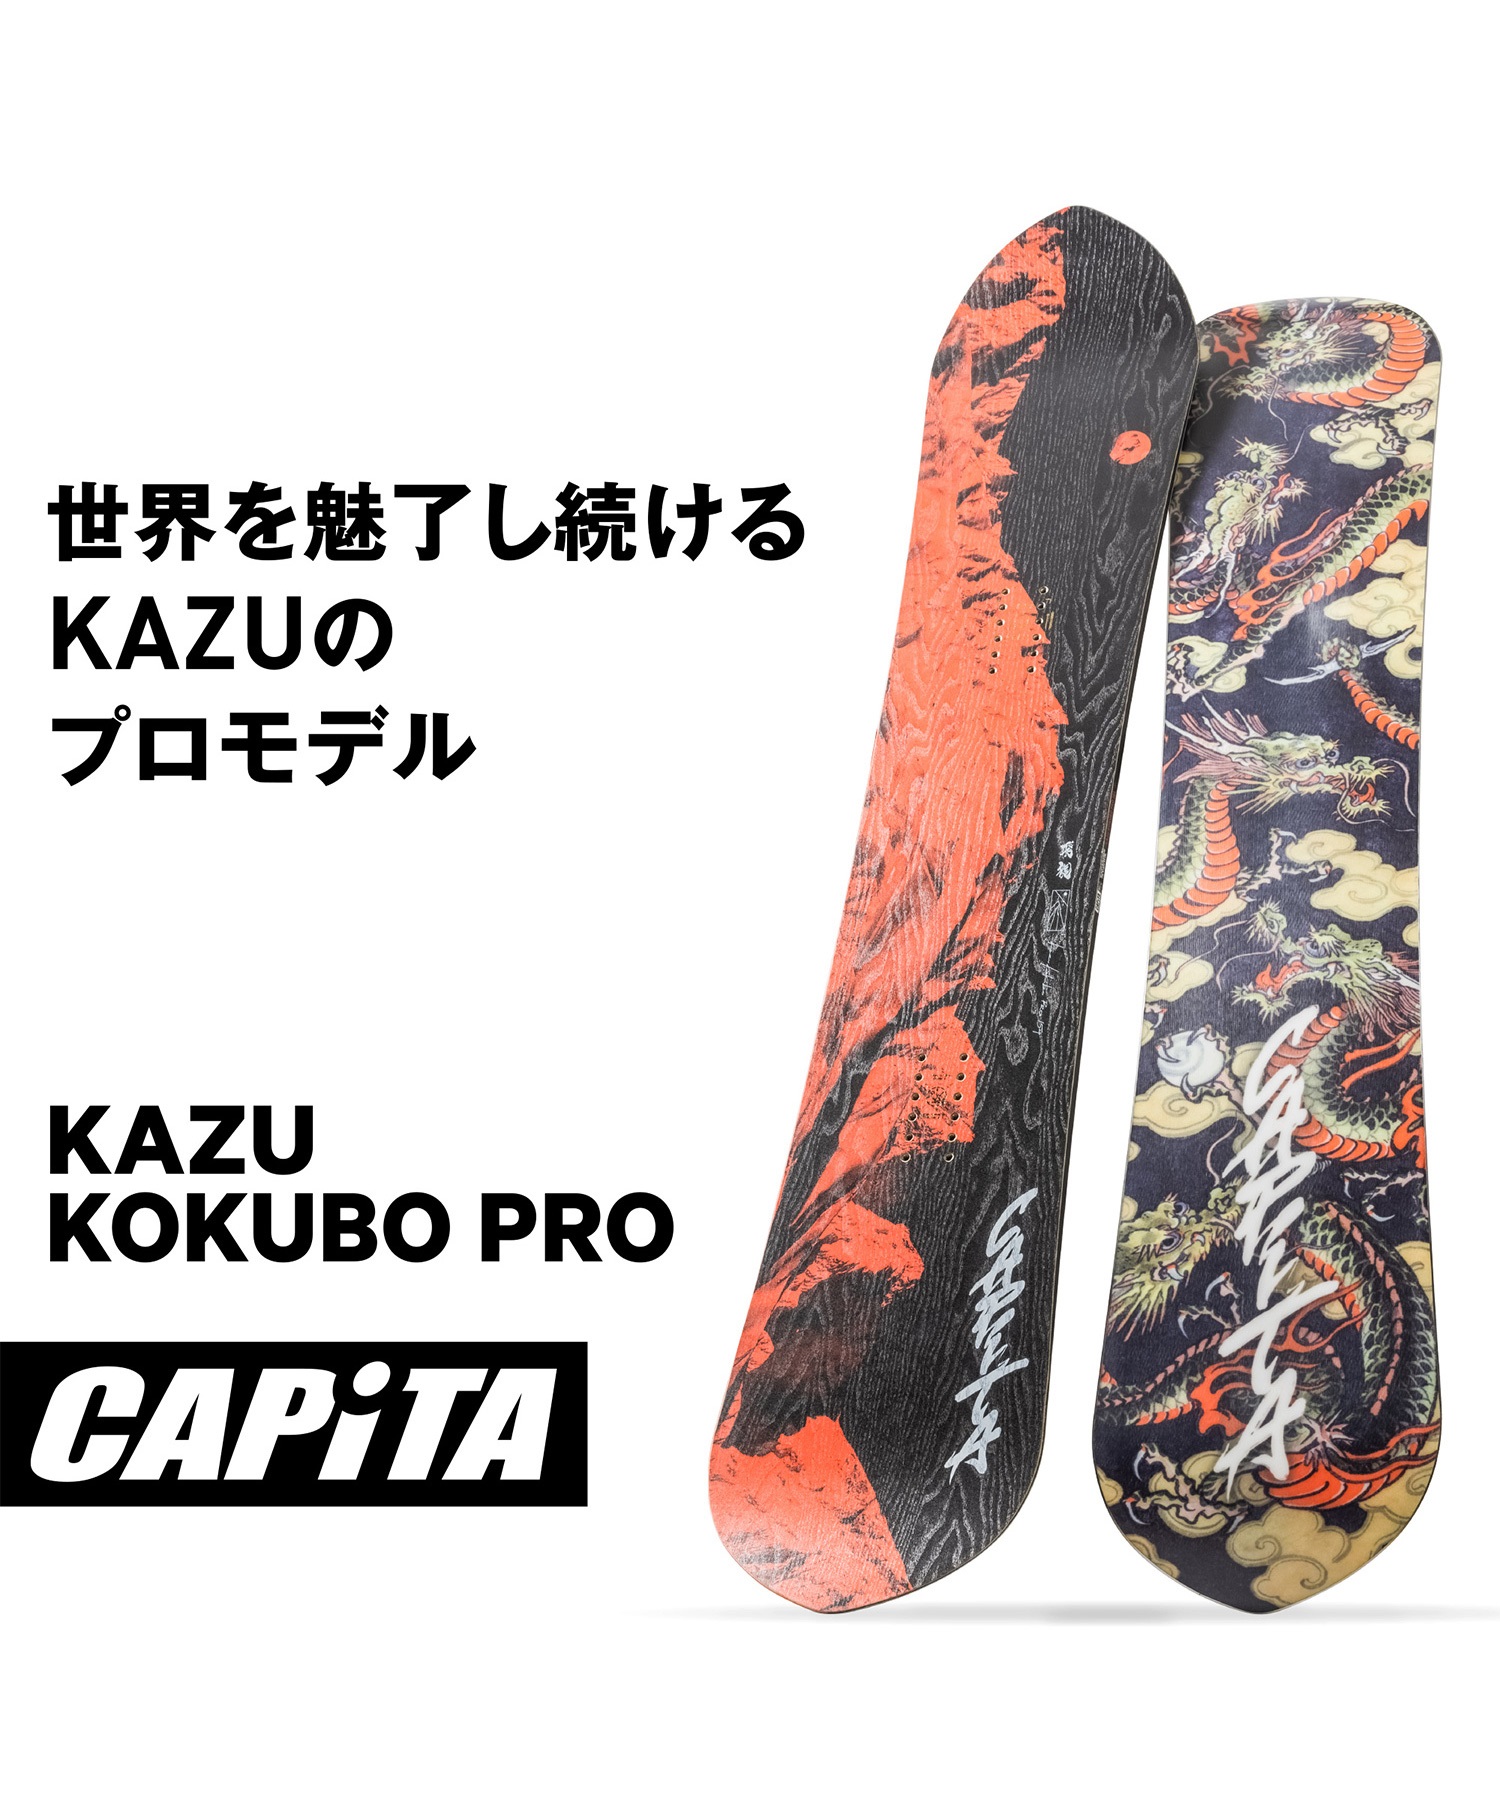 どなたかお使いください23-24 CAPITA KAZU KOKUBO PRO 157cm